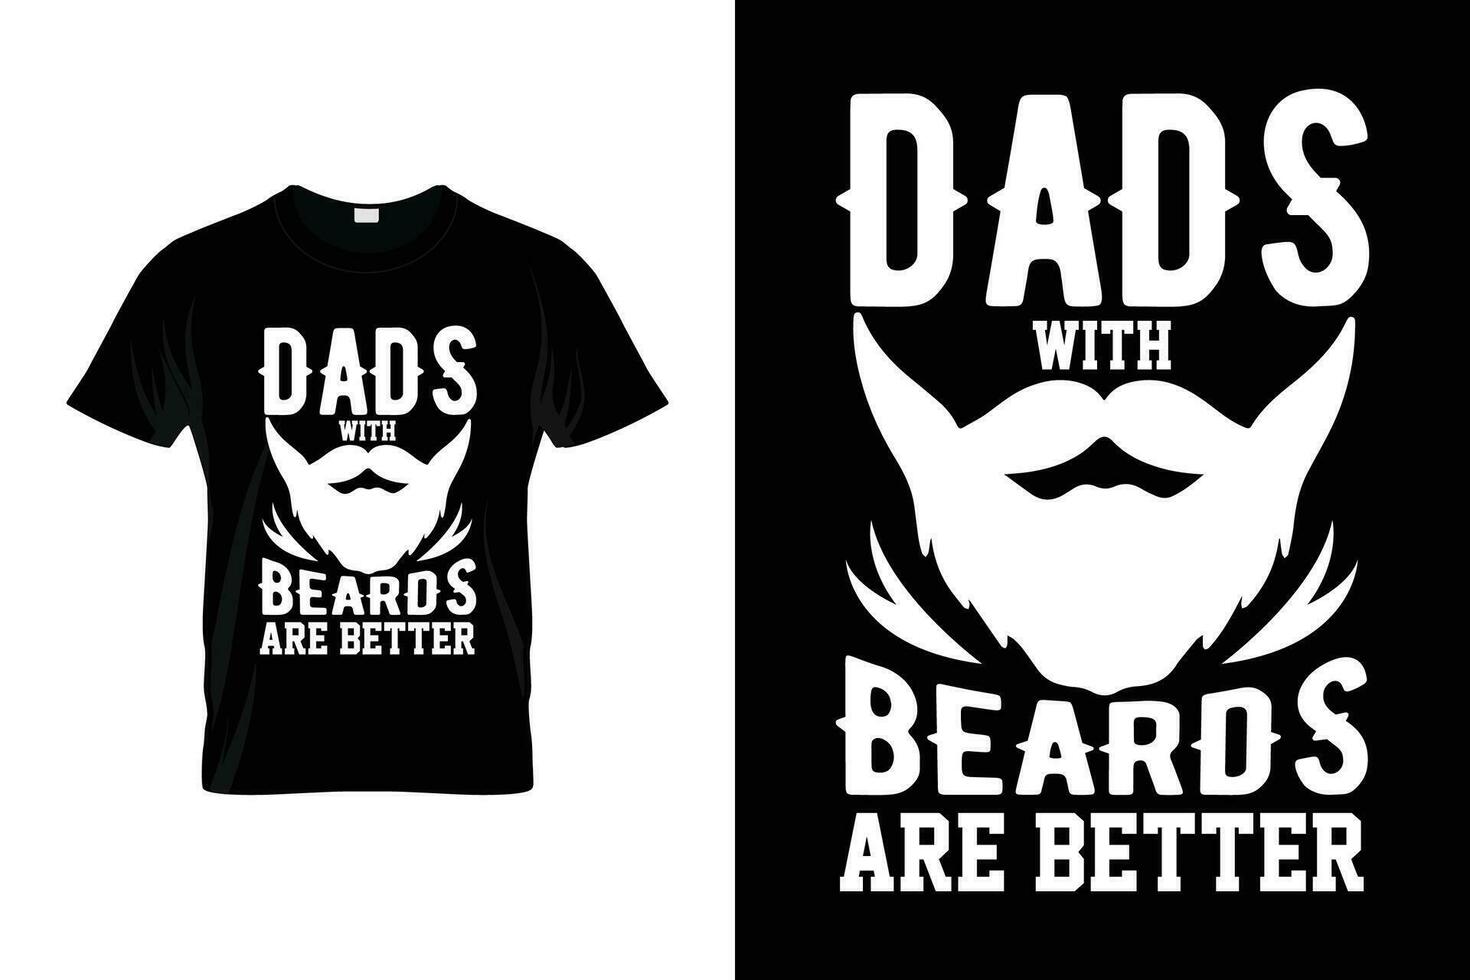 vaders met baarden zijn beter baard humor grappig gezegde baard t-shirt vector